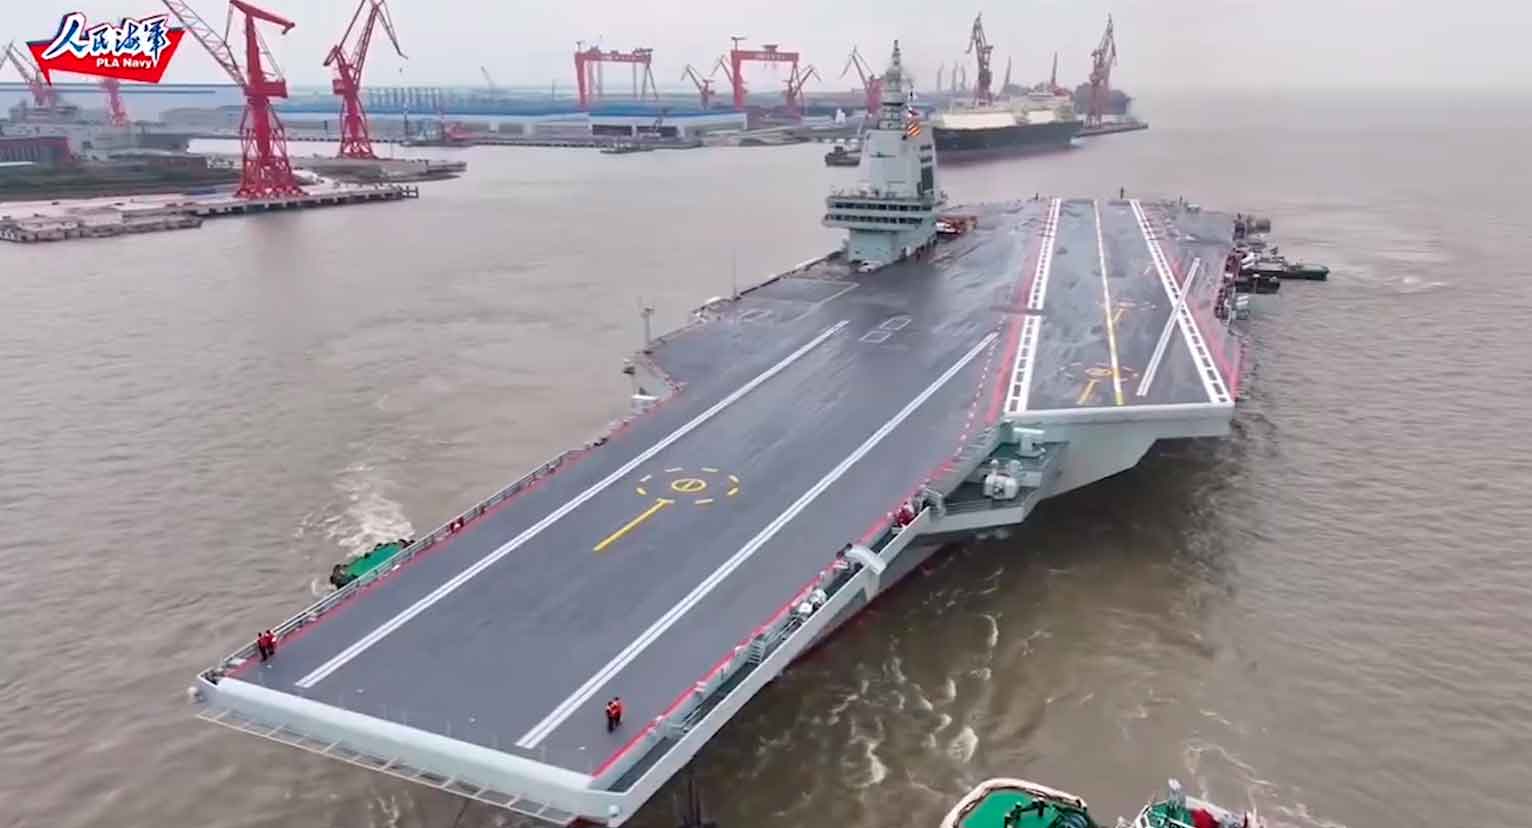 videó: hatalmas kínai repülőgép-hordozó, a fujian, elkezdi a tengeri teszteket: ismerd meg a jellemzőit